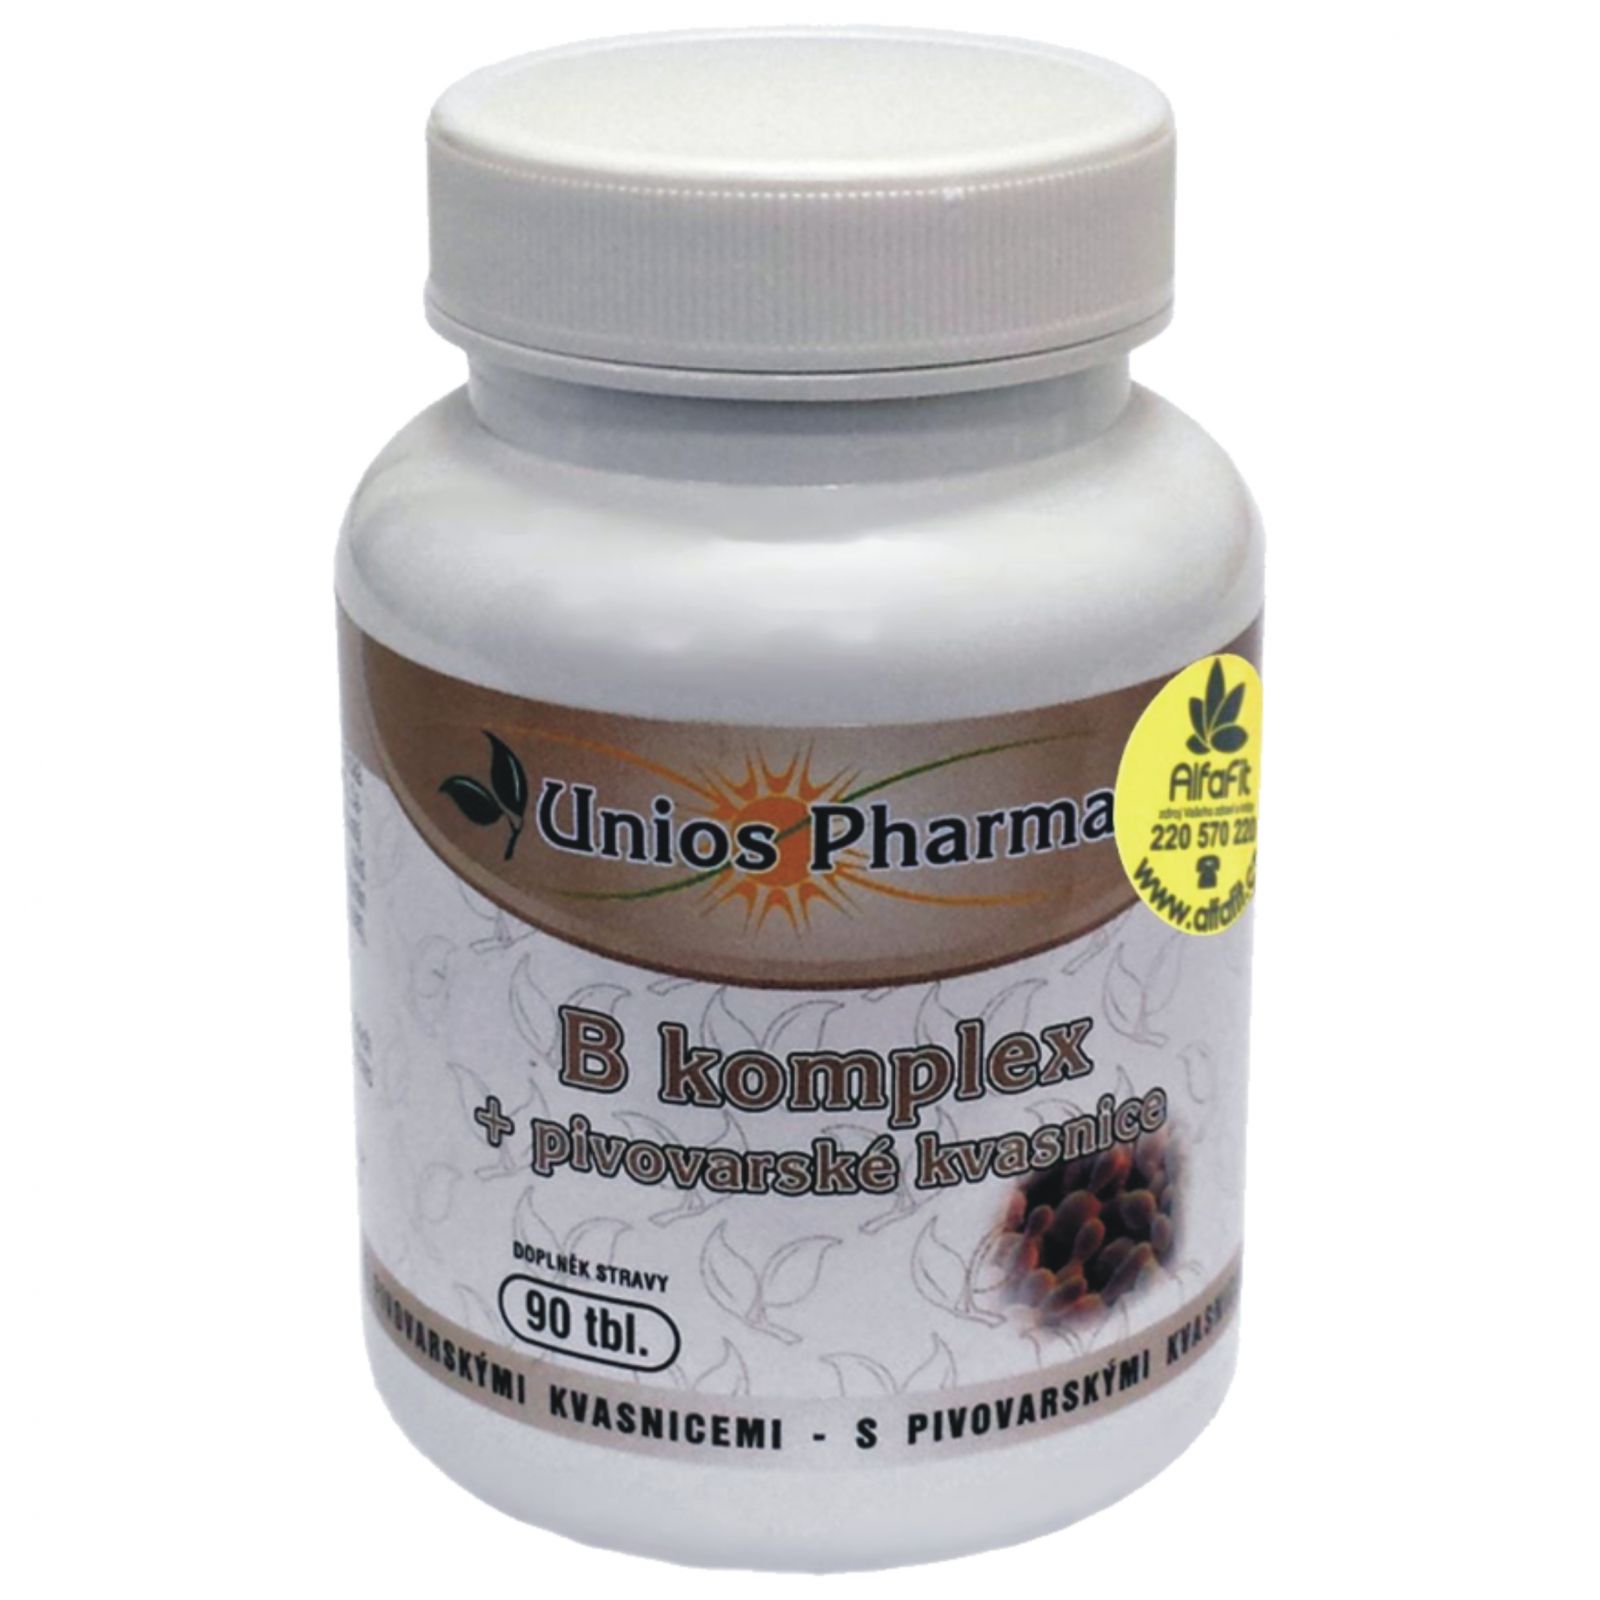 Unios Pharma B komplex + pivovarské kvasnice 90 tablet